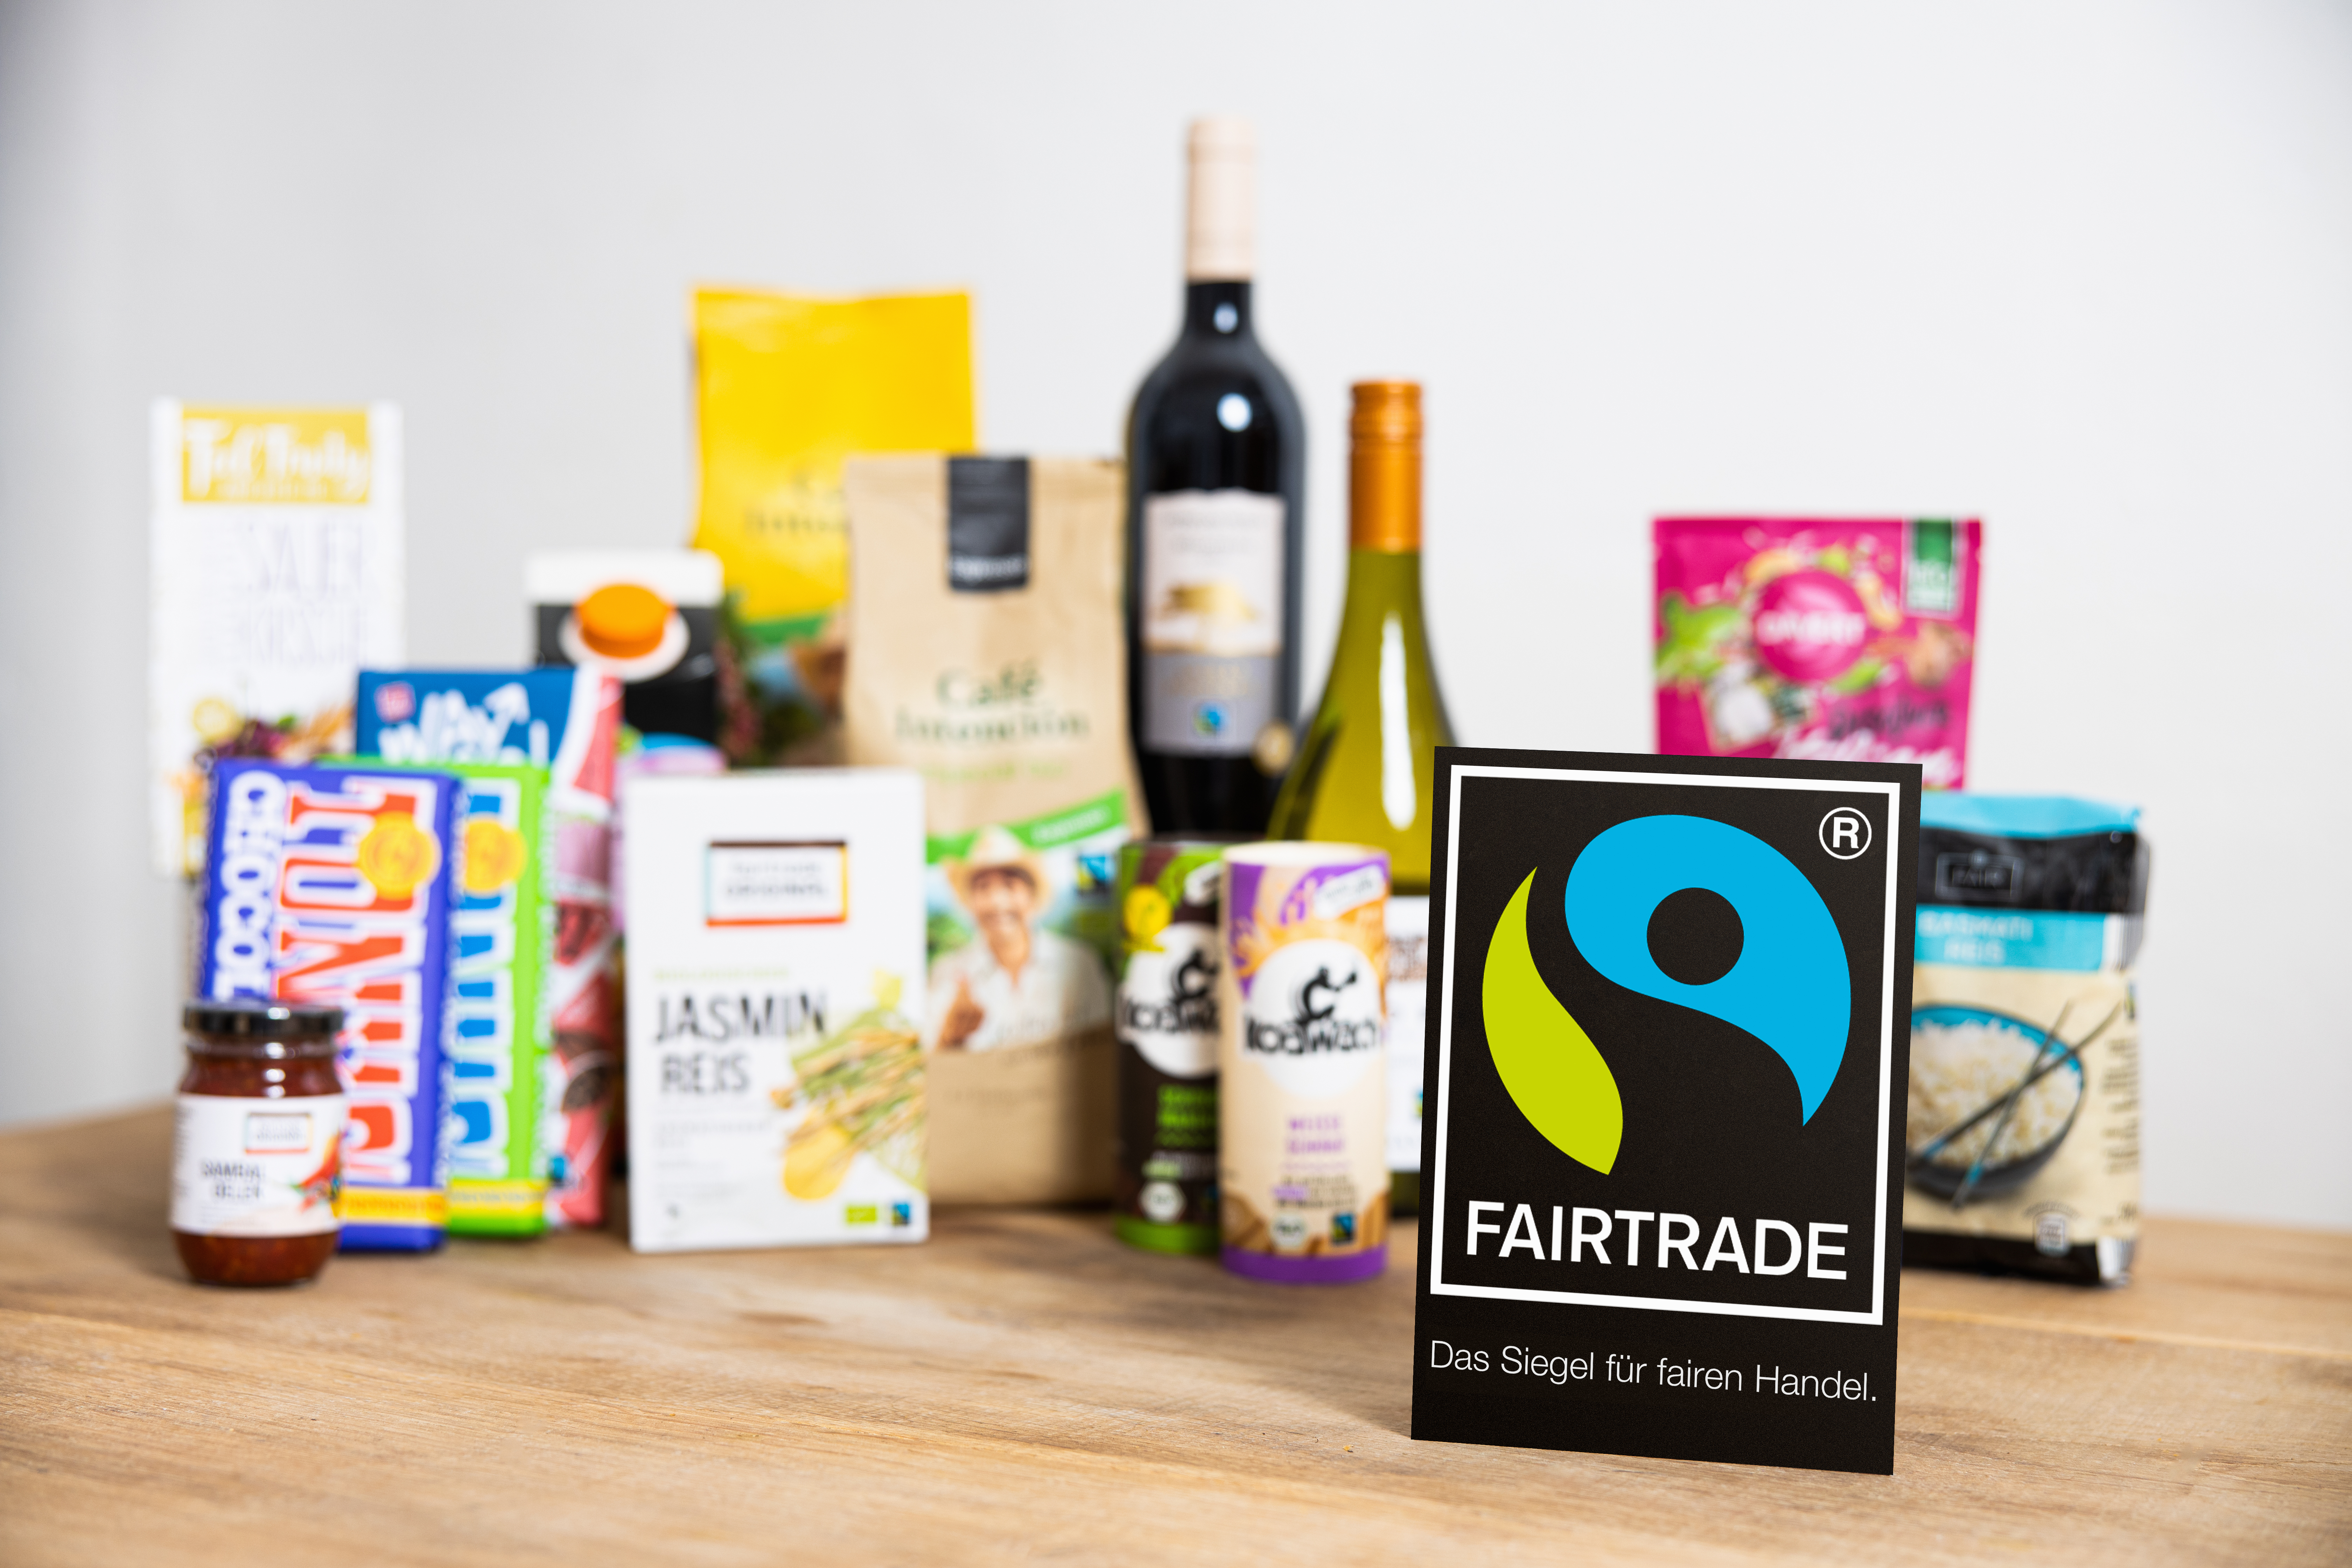 Fairtrade-Produkte stehen auf einem Tisch, das Produktsiegel steht davor.